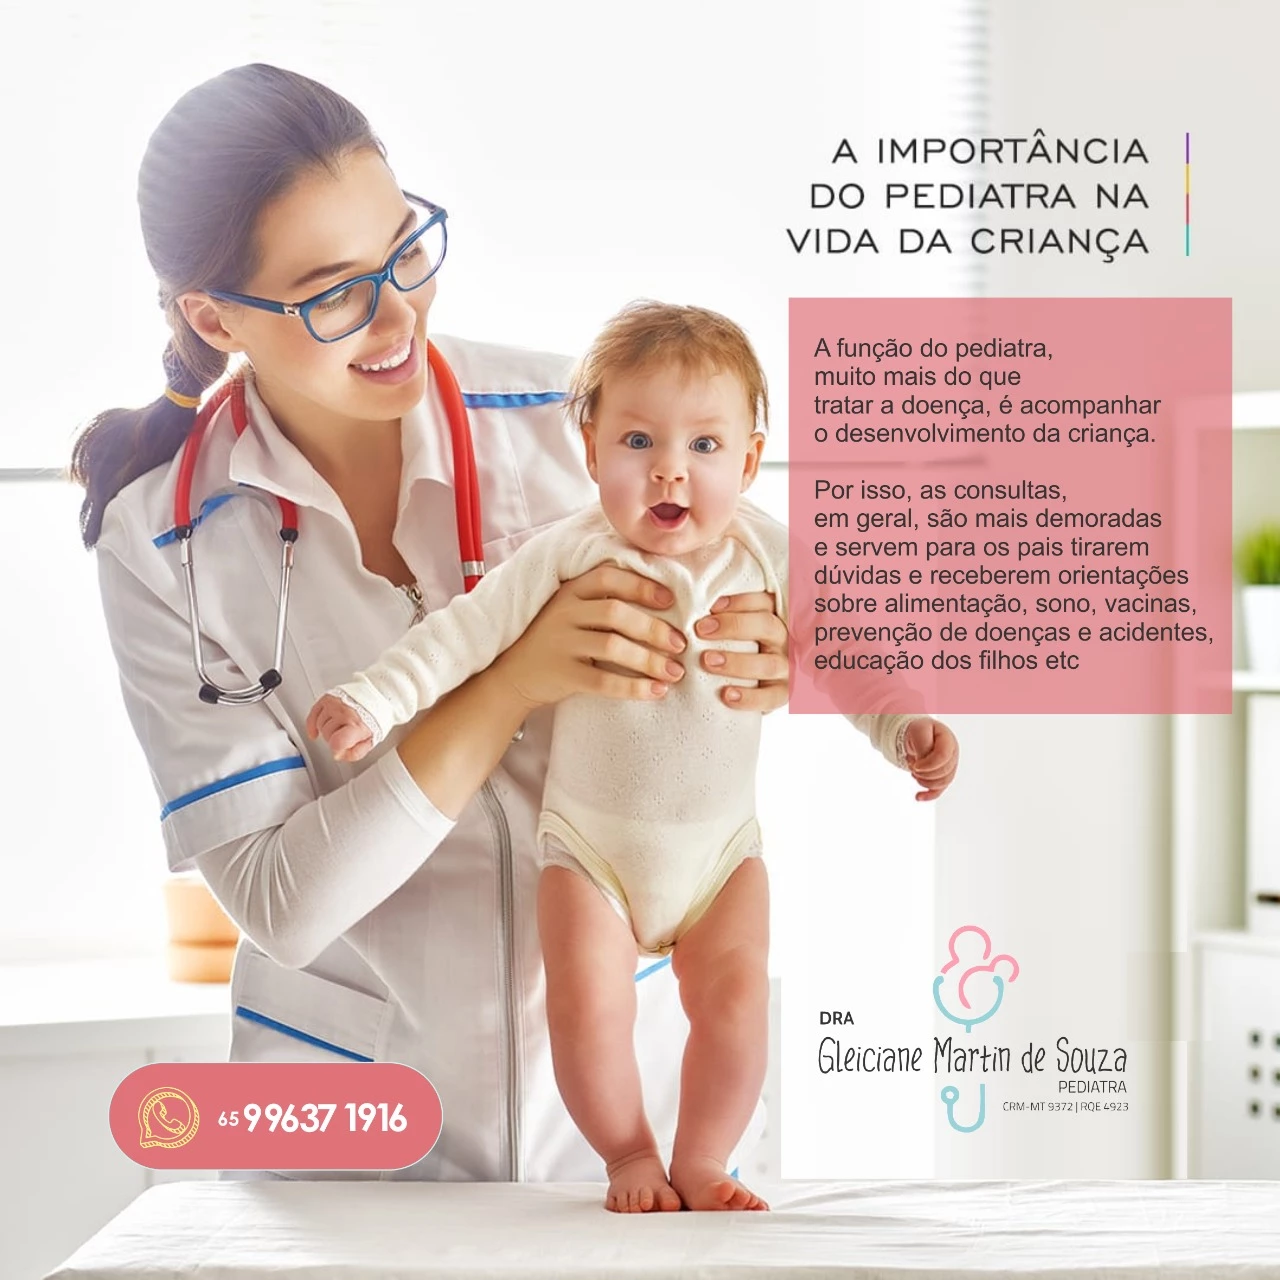 
Propaganda para Clínica Pediátrica Importância do Pediatra na vida da Criança



